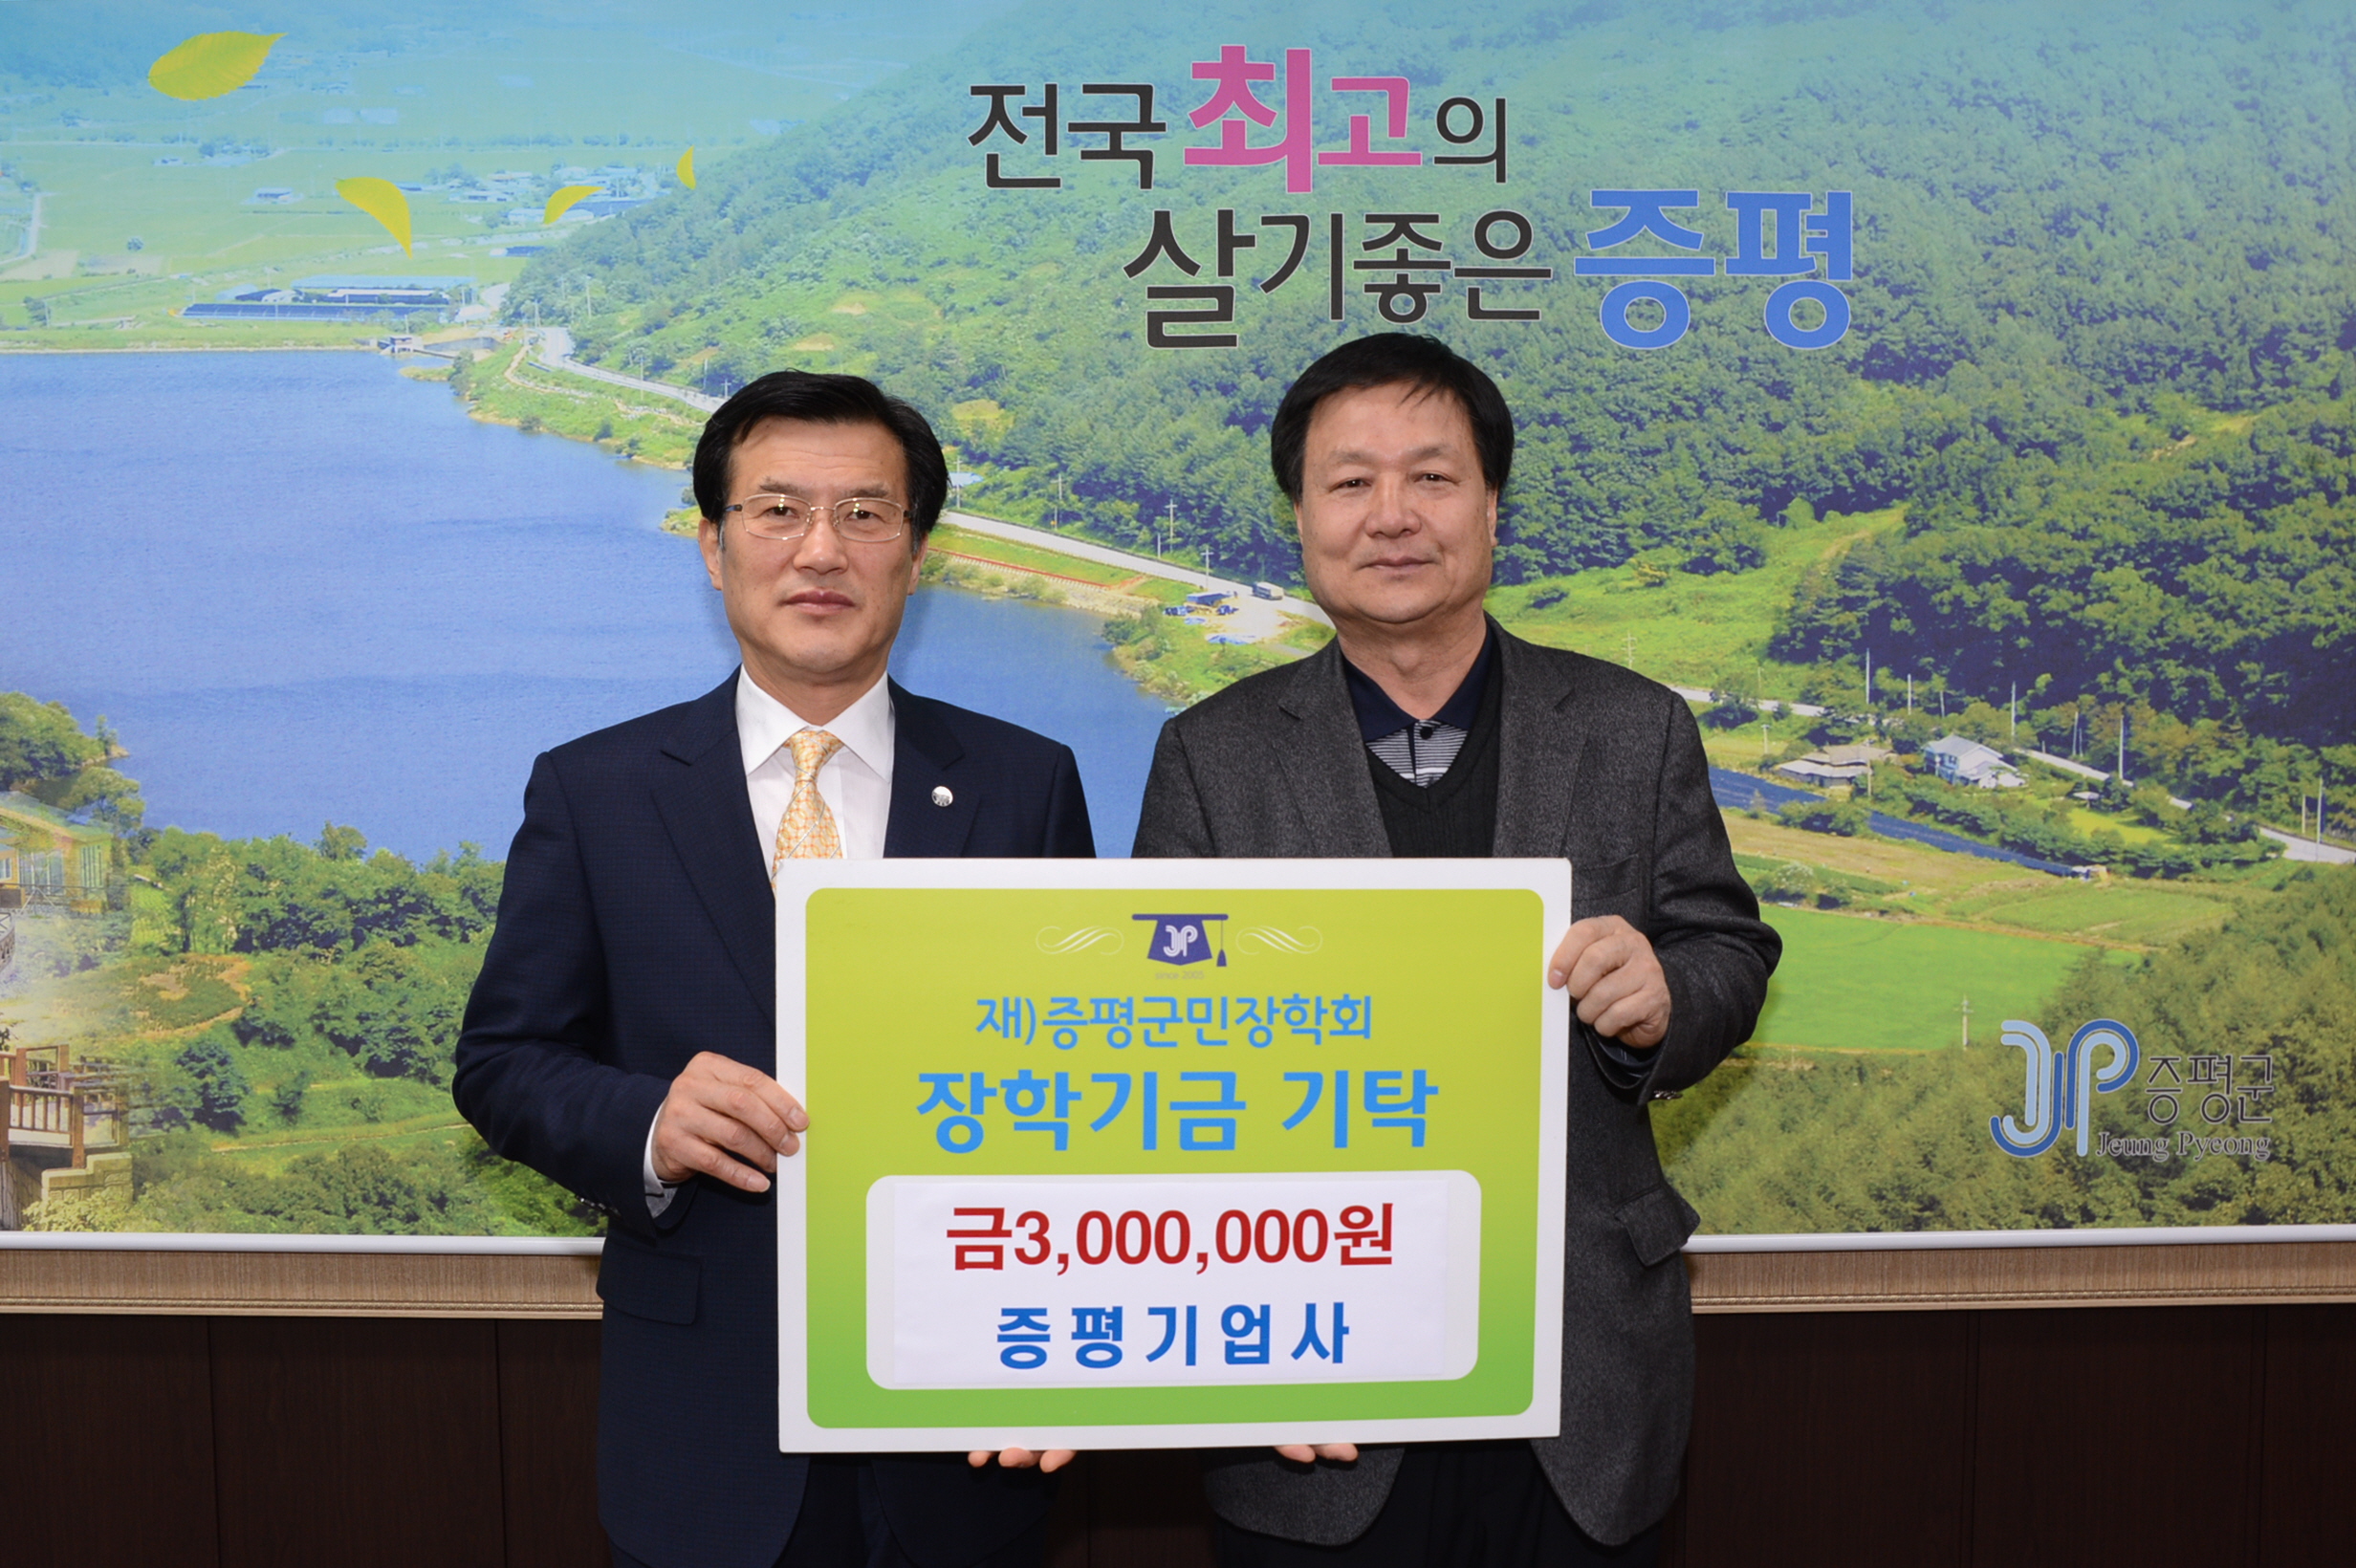 증평기업사 박성현씨 장학금 300만원 기탁